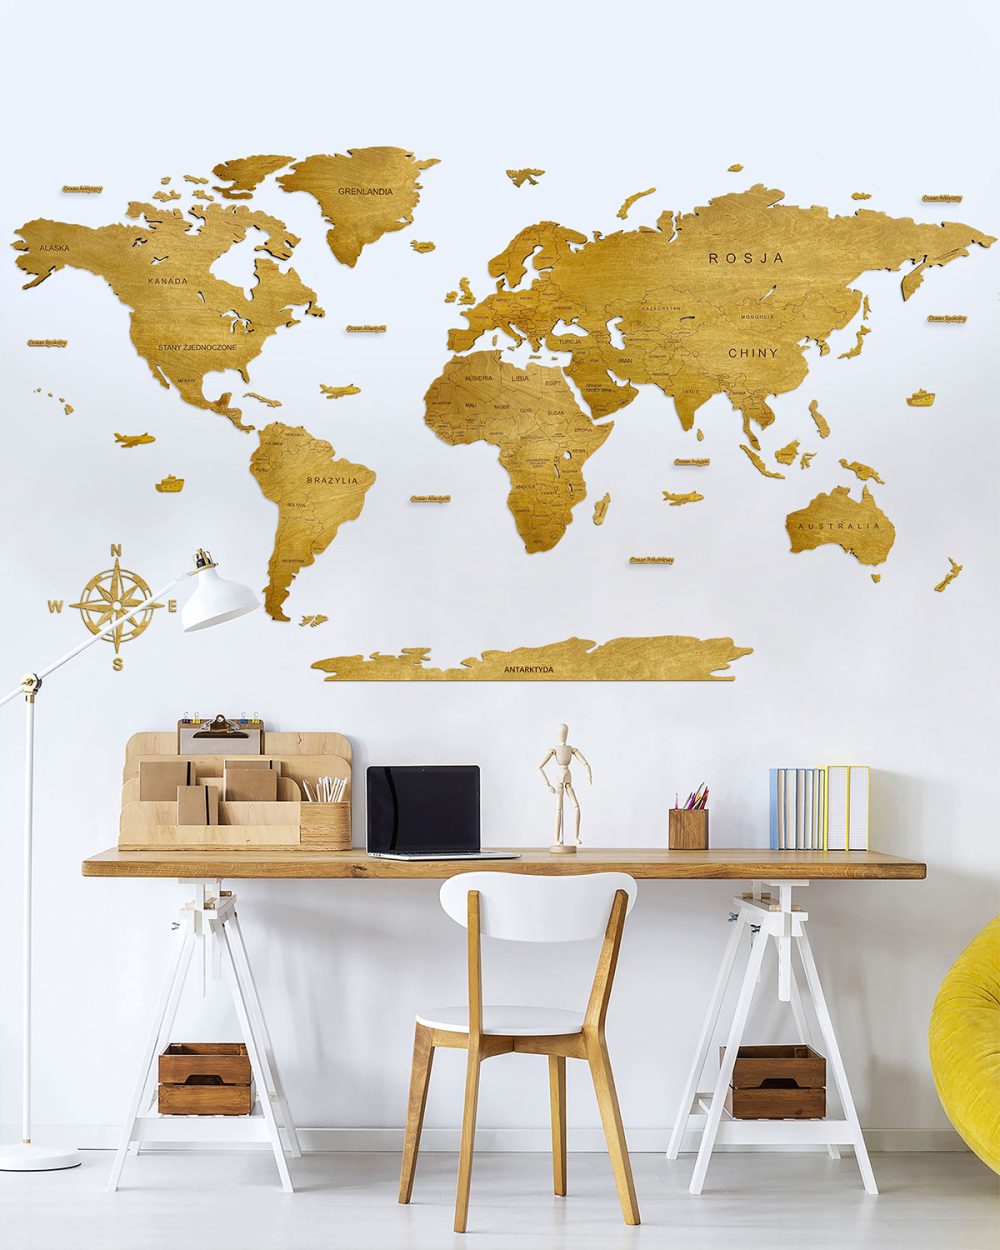 Drewniana Mapa Świata Classic z podpisami państw dekoracja na ścianę mapa świata na ścianę